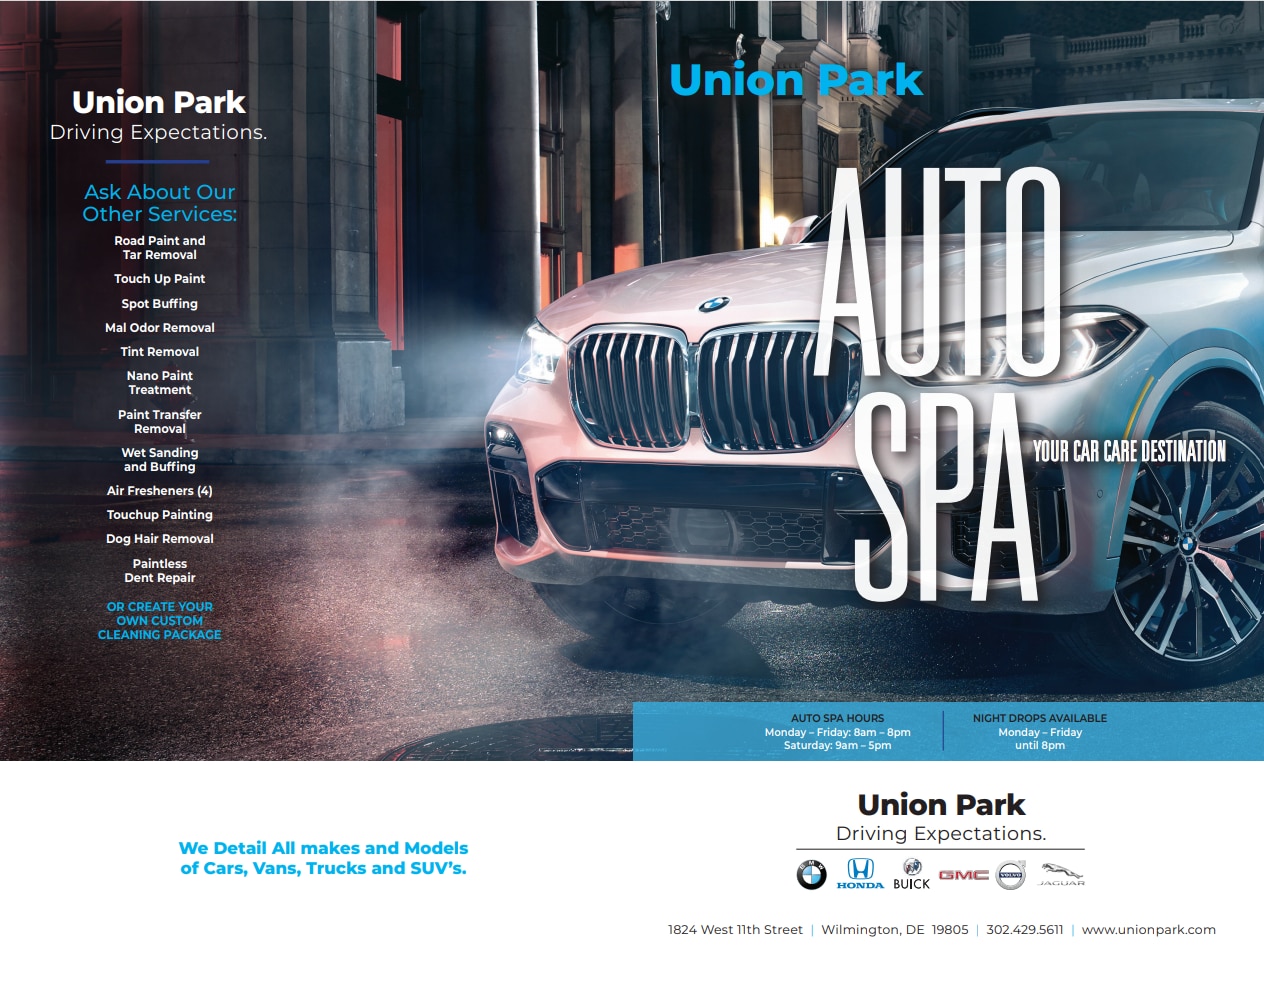 Union Park Auto Spa Services